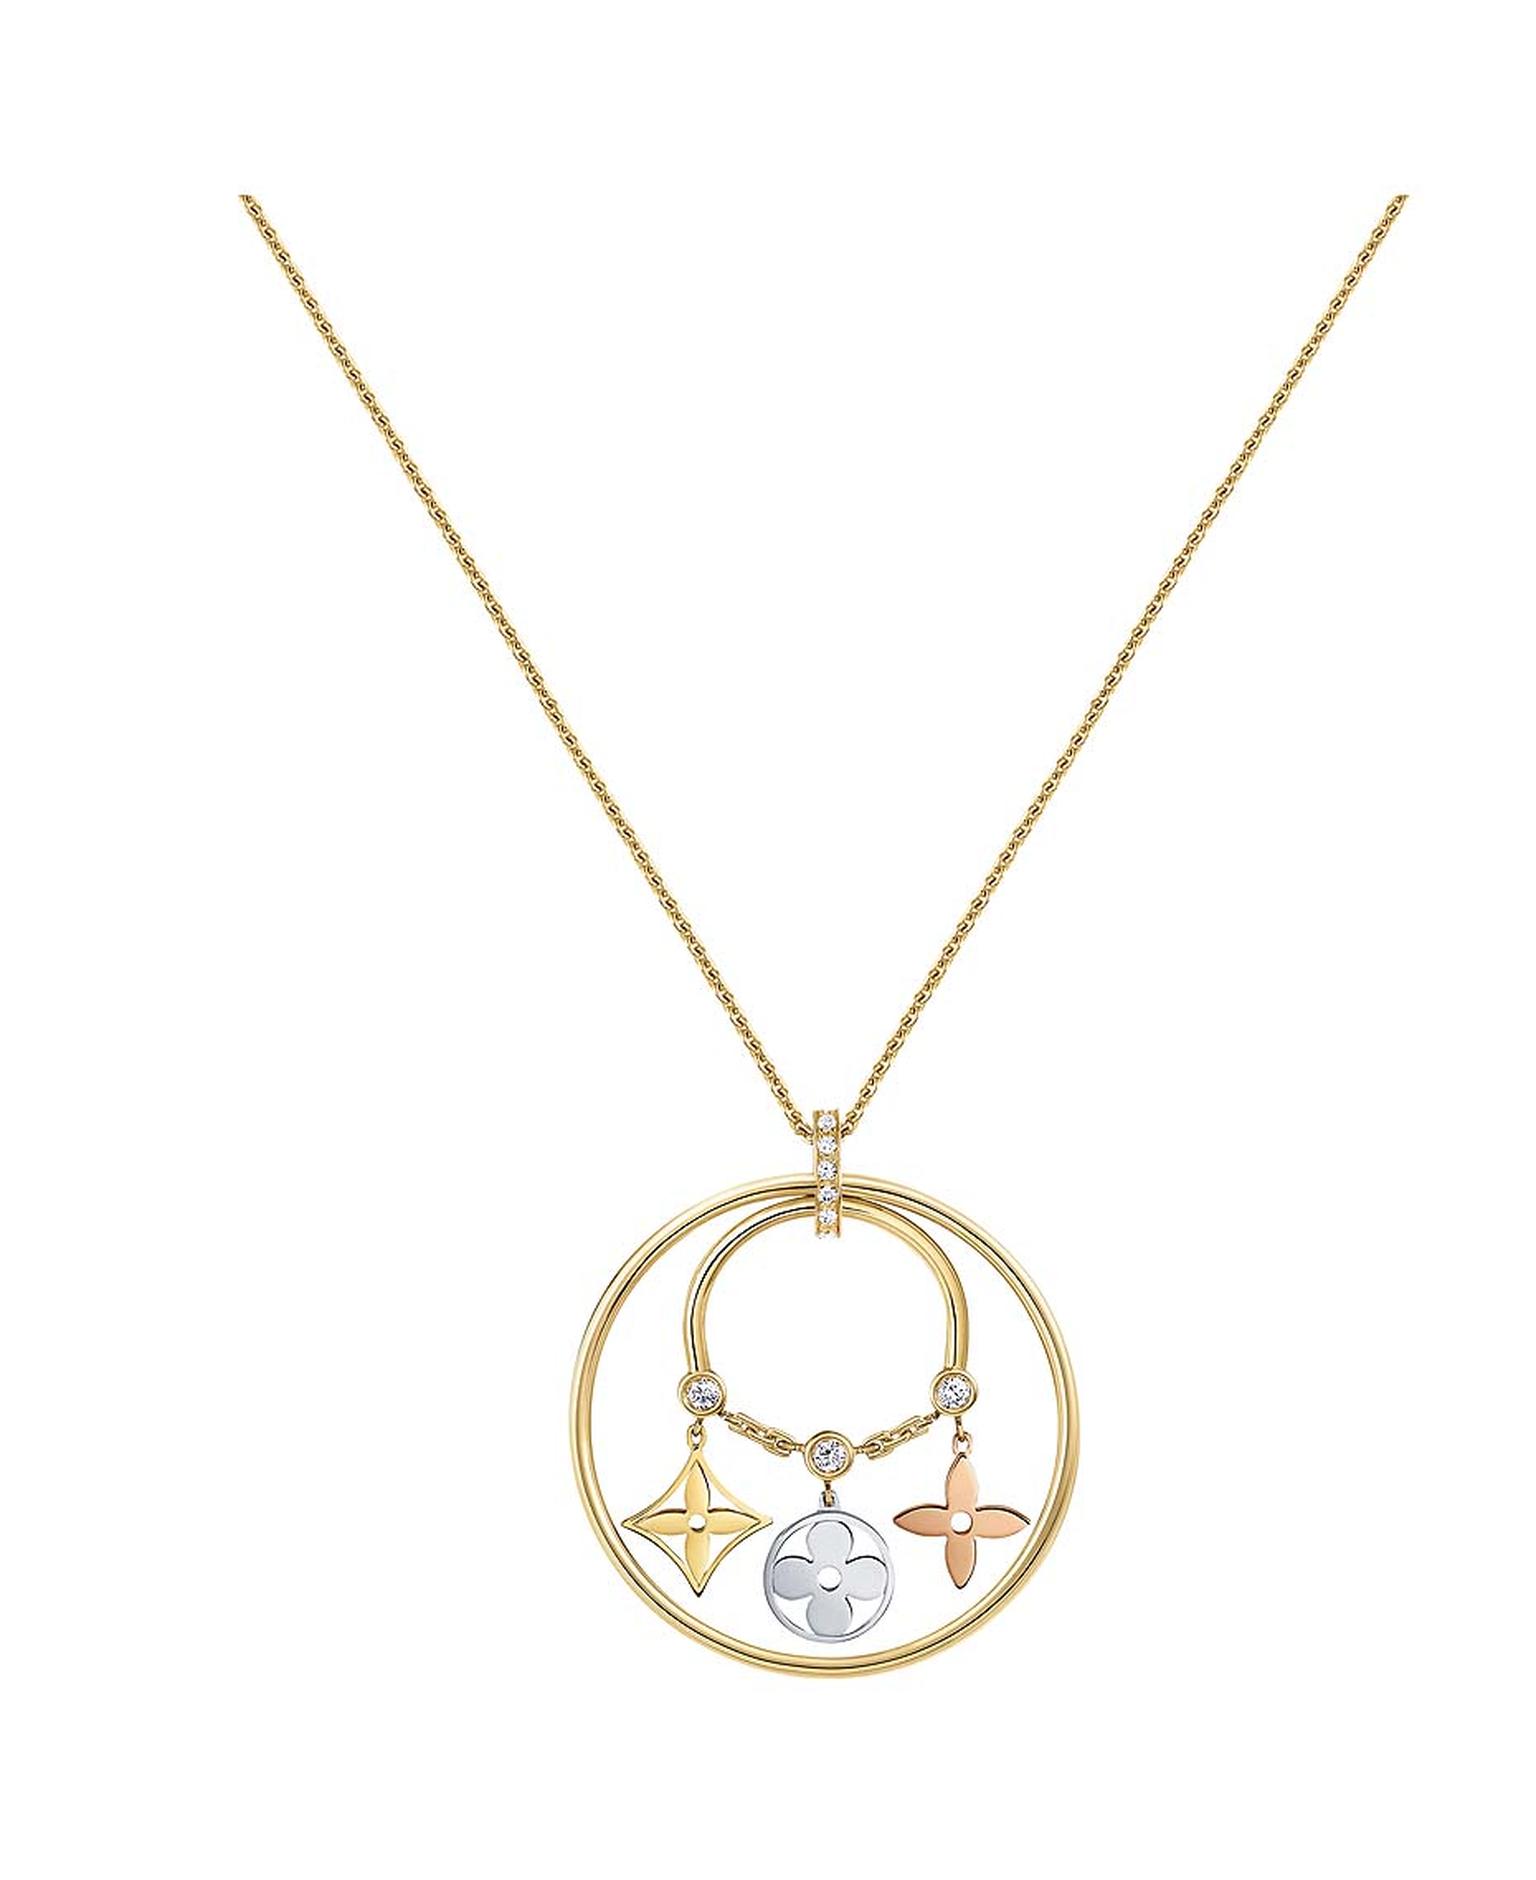 Louis Vuitton Monogram Necklace, Gold